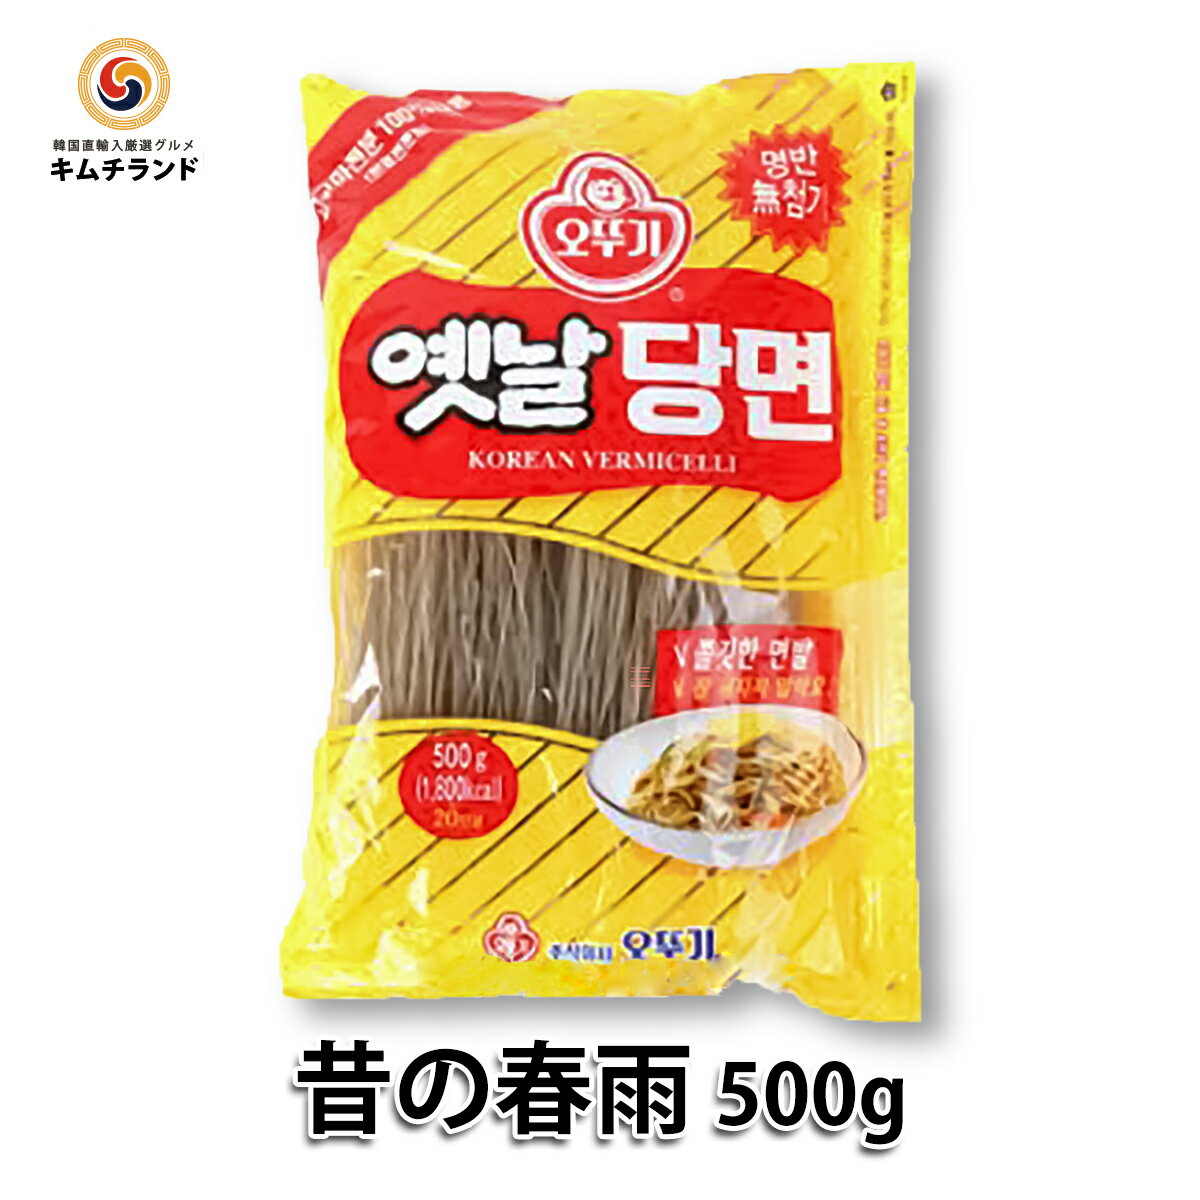 【オットギ 昔の春雨 500g】 韓国 春雨 韓国食材 韓国食品 韓国料理 チャプチェ 低カロリー タンミョン | お取り寄せ…